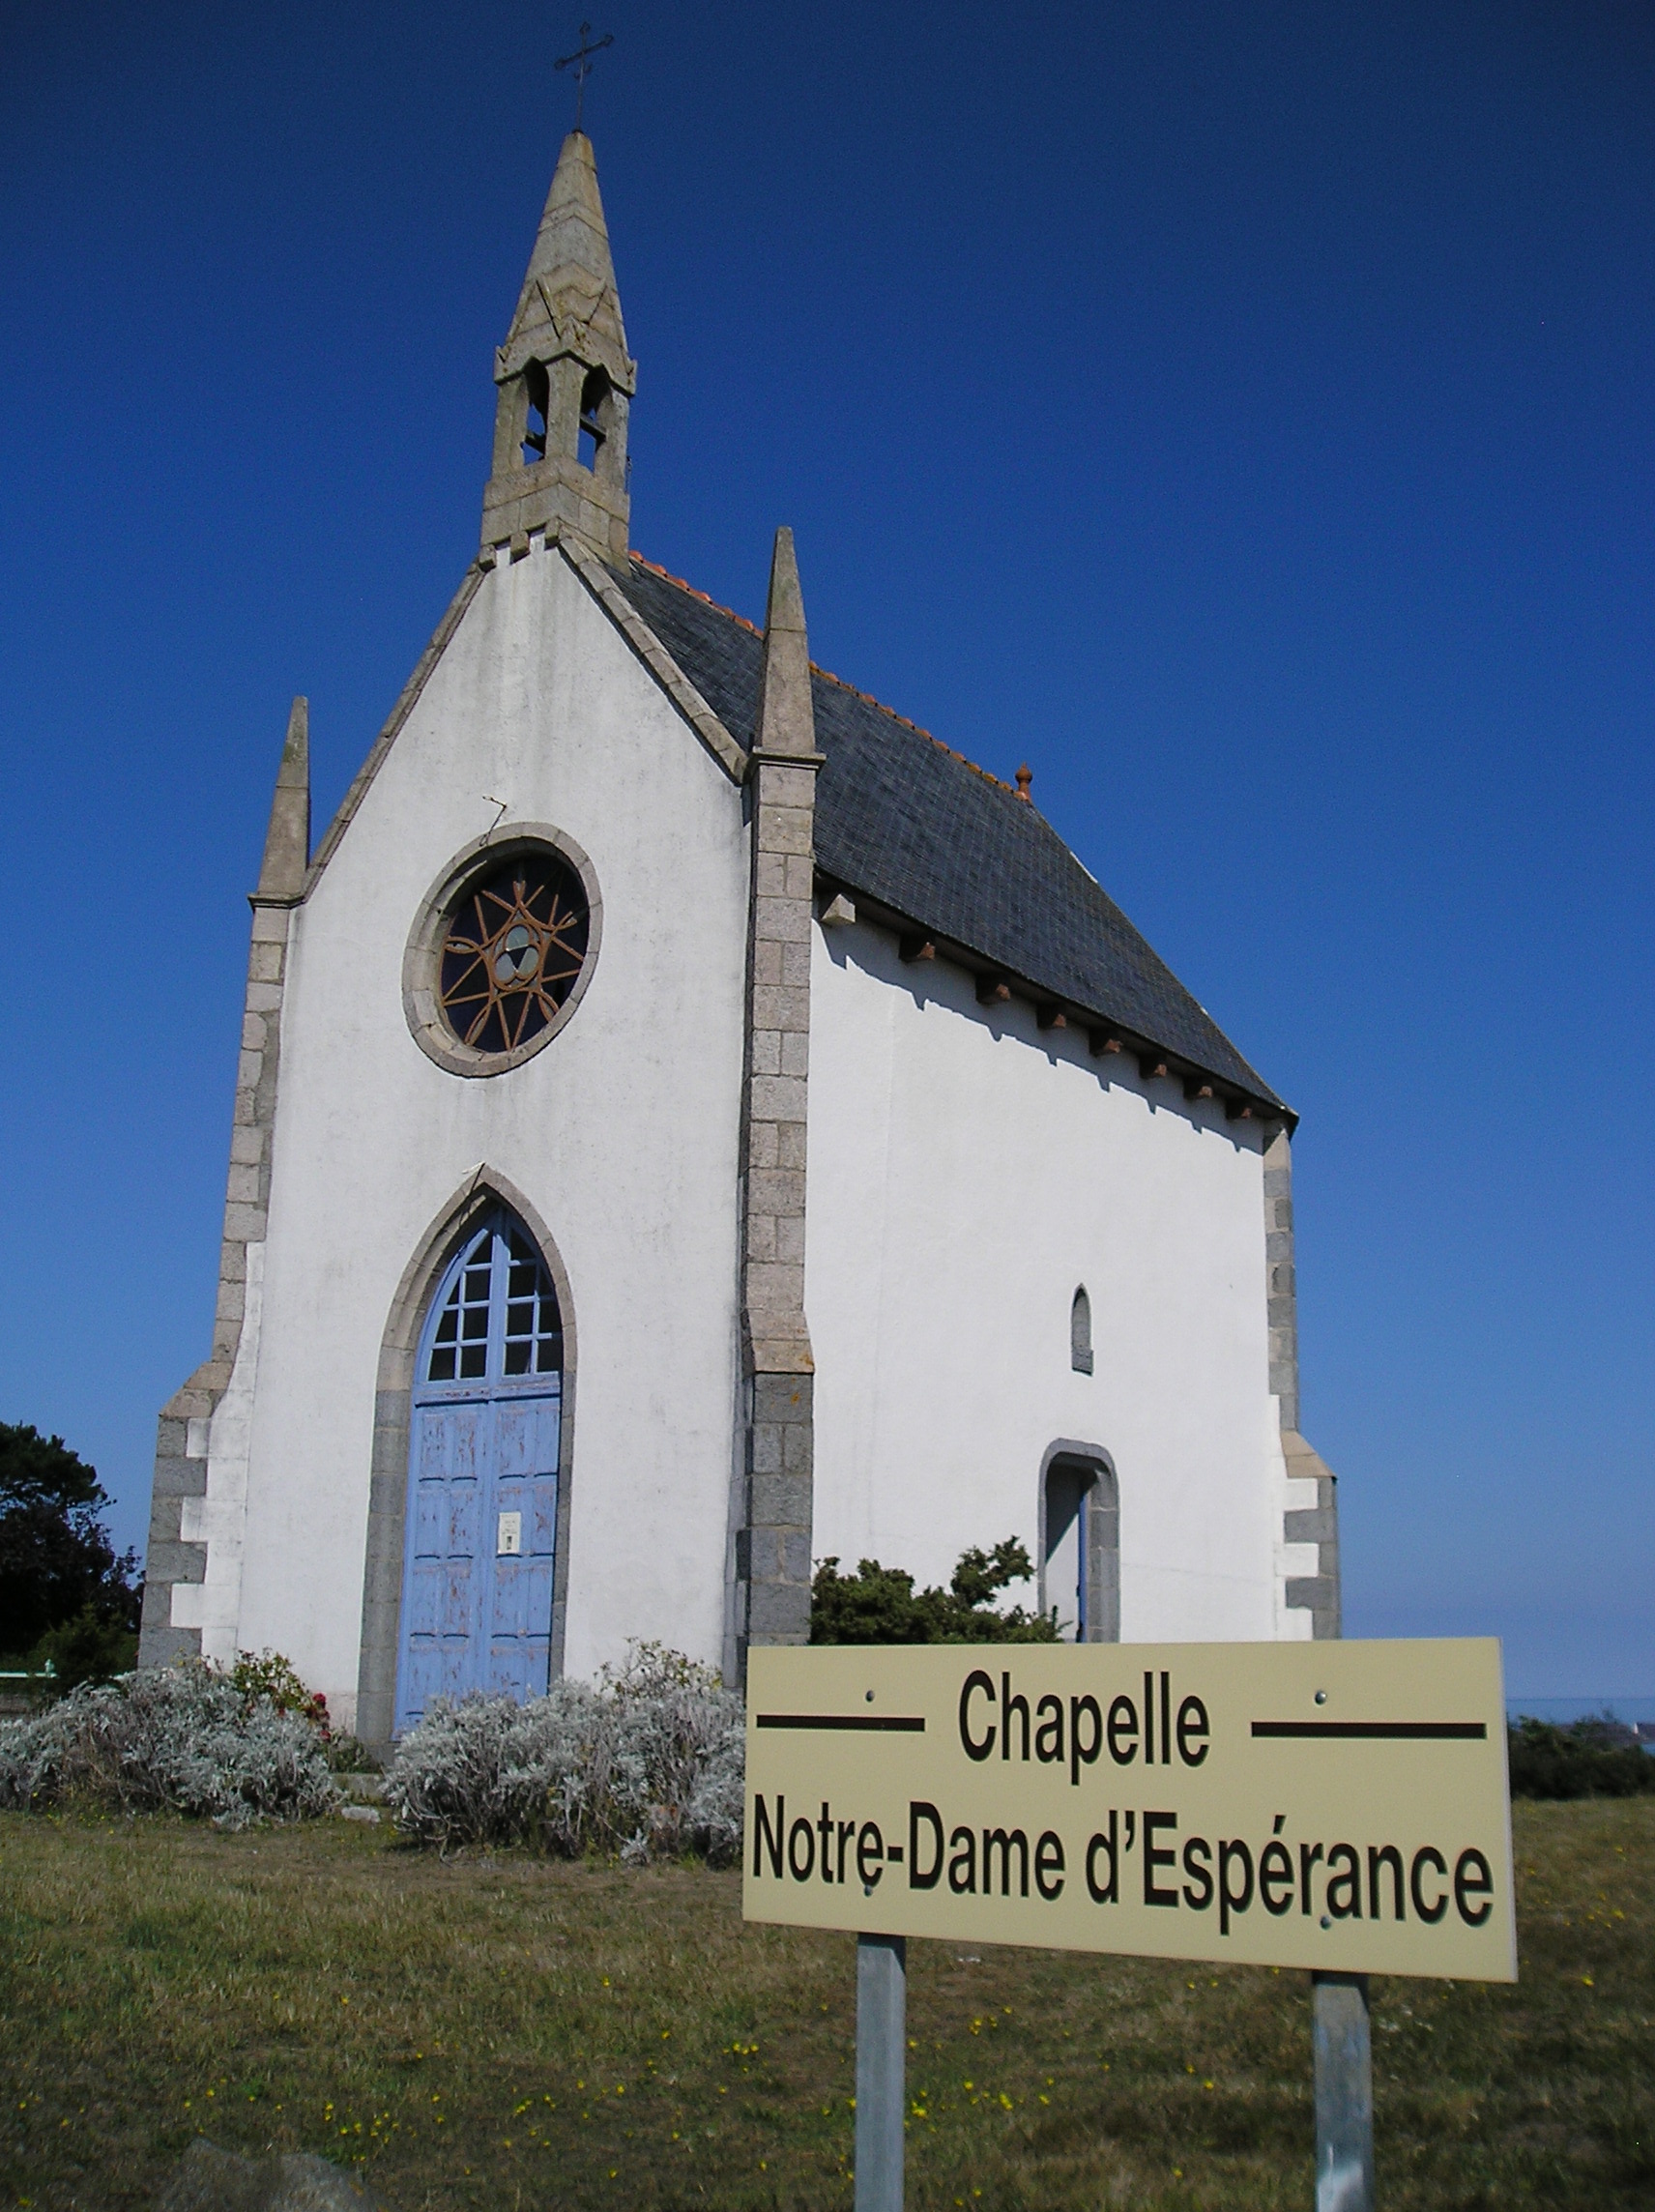 Chapelle Notre-Dame d’Espérance